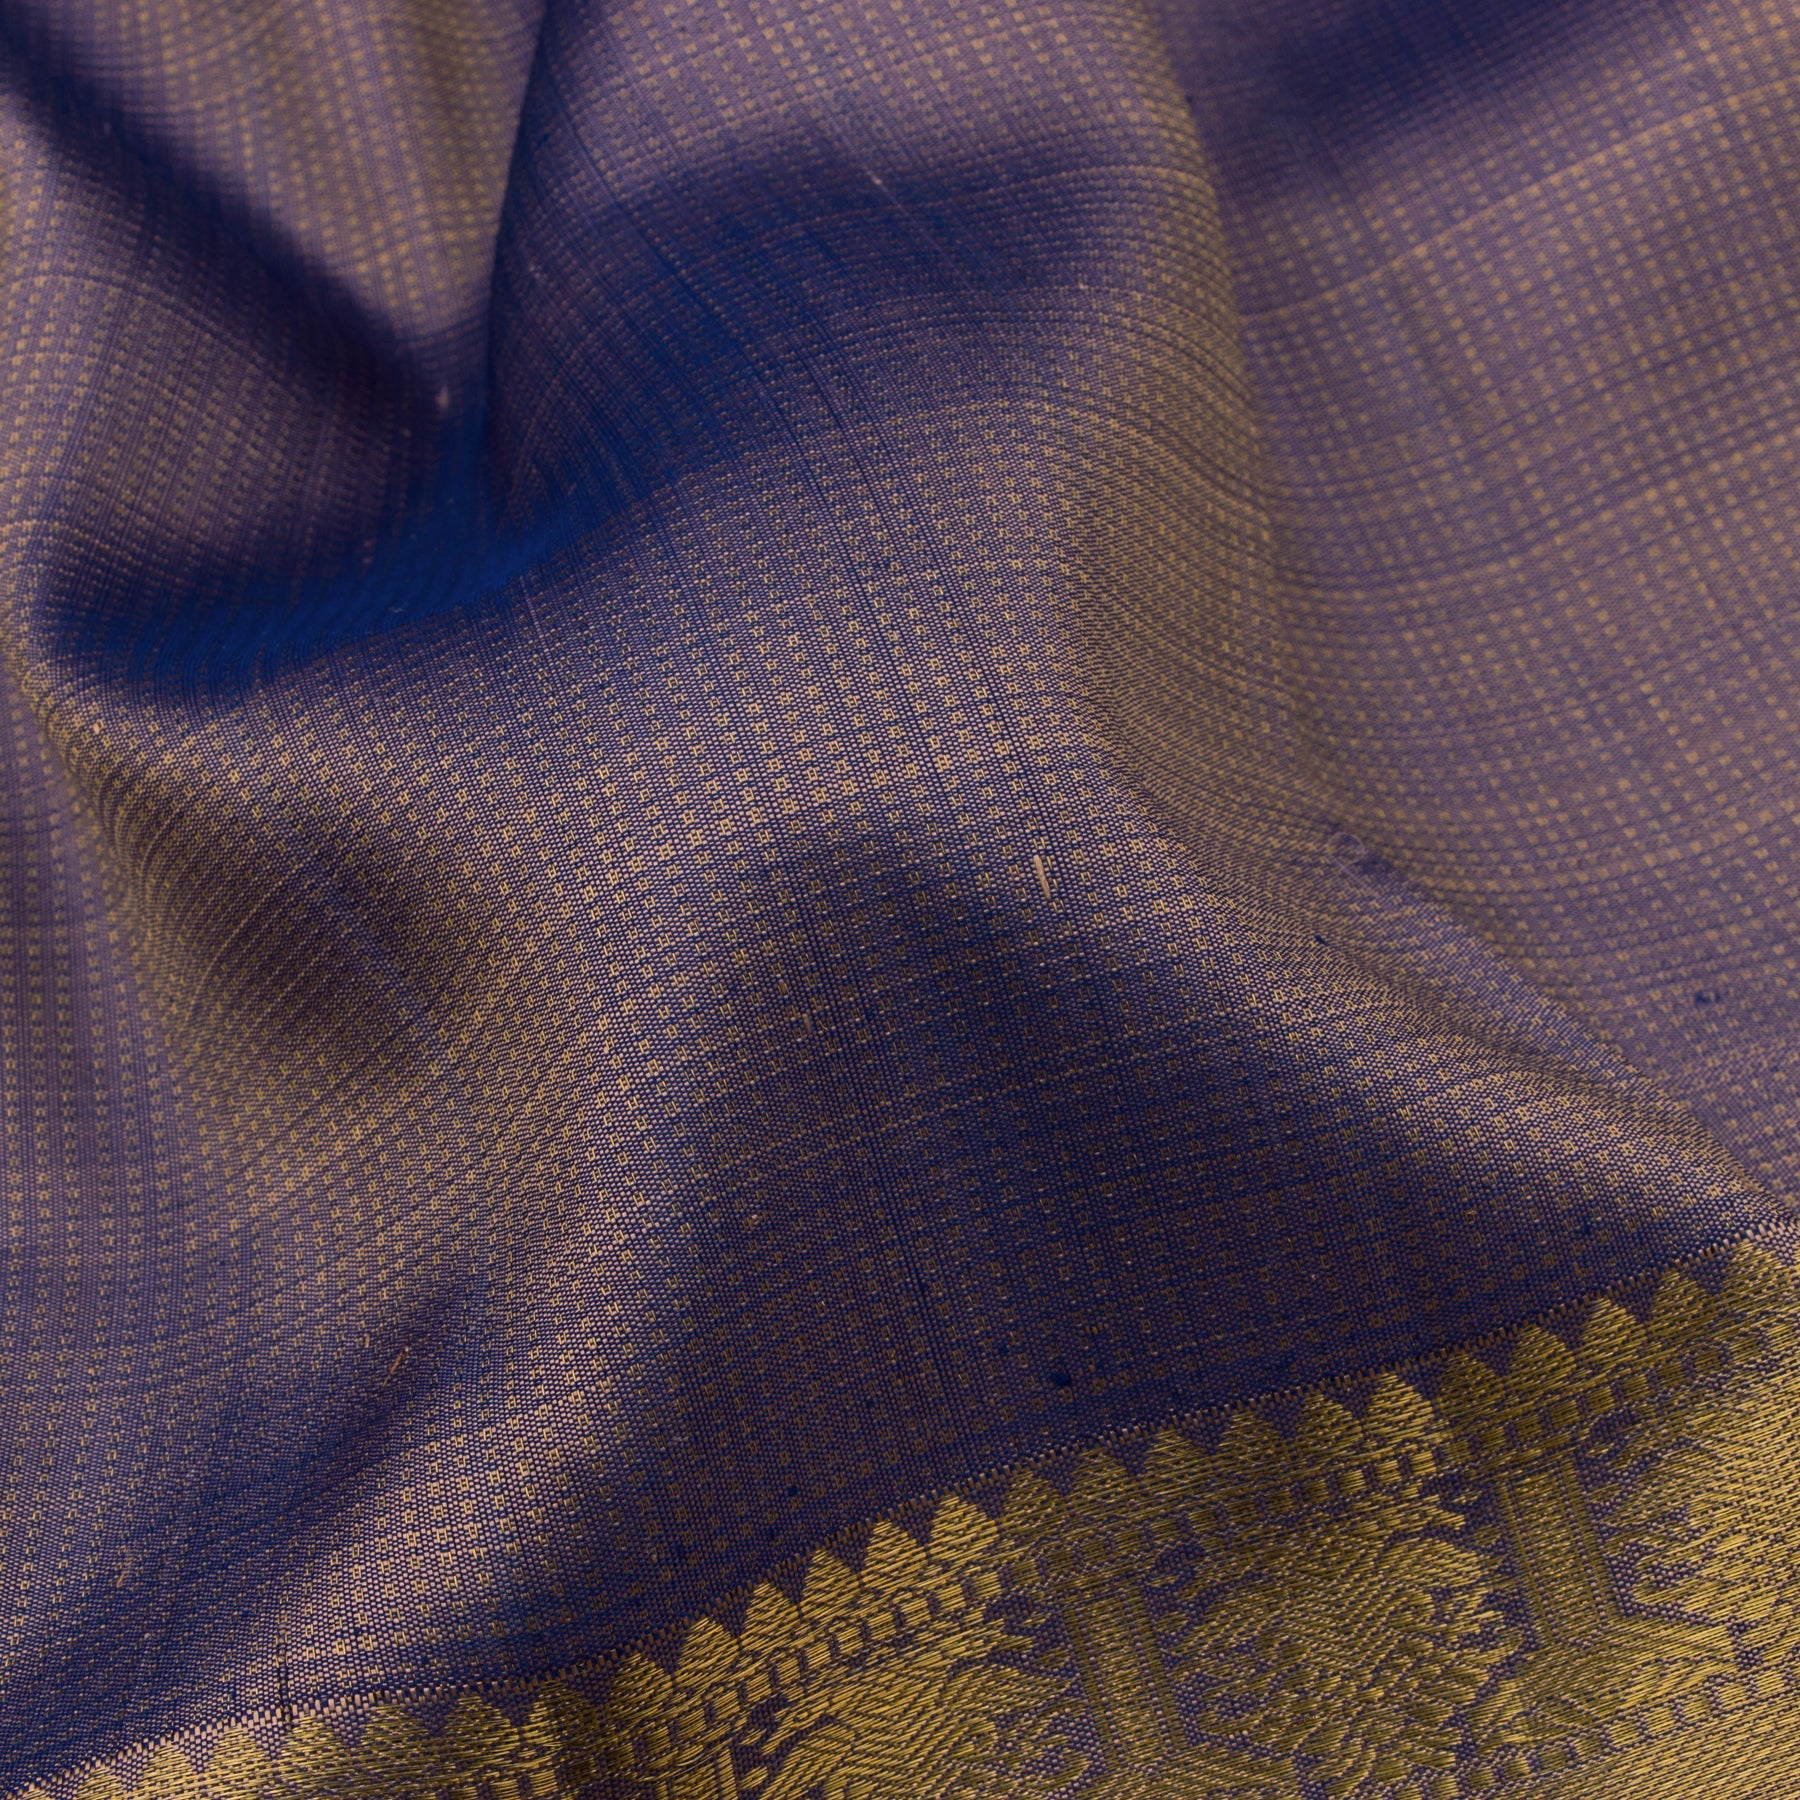 Kanakavalli Kanjivaram Silk Sari 22-599-HS001-10284 - Fabric View